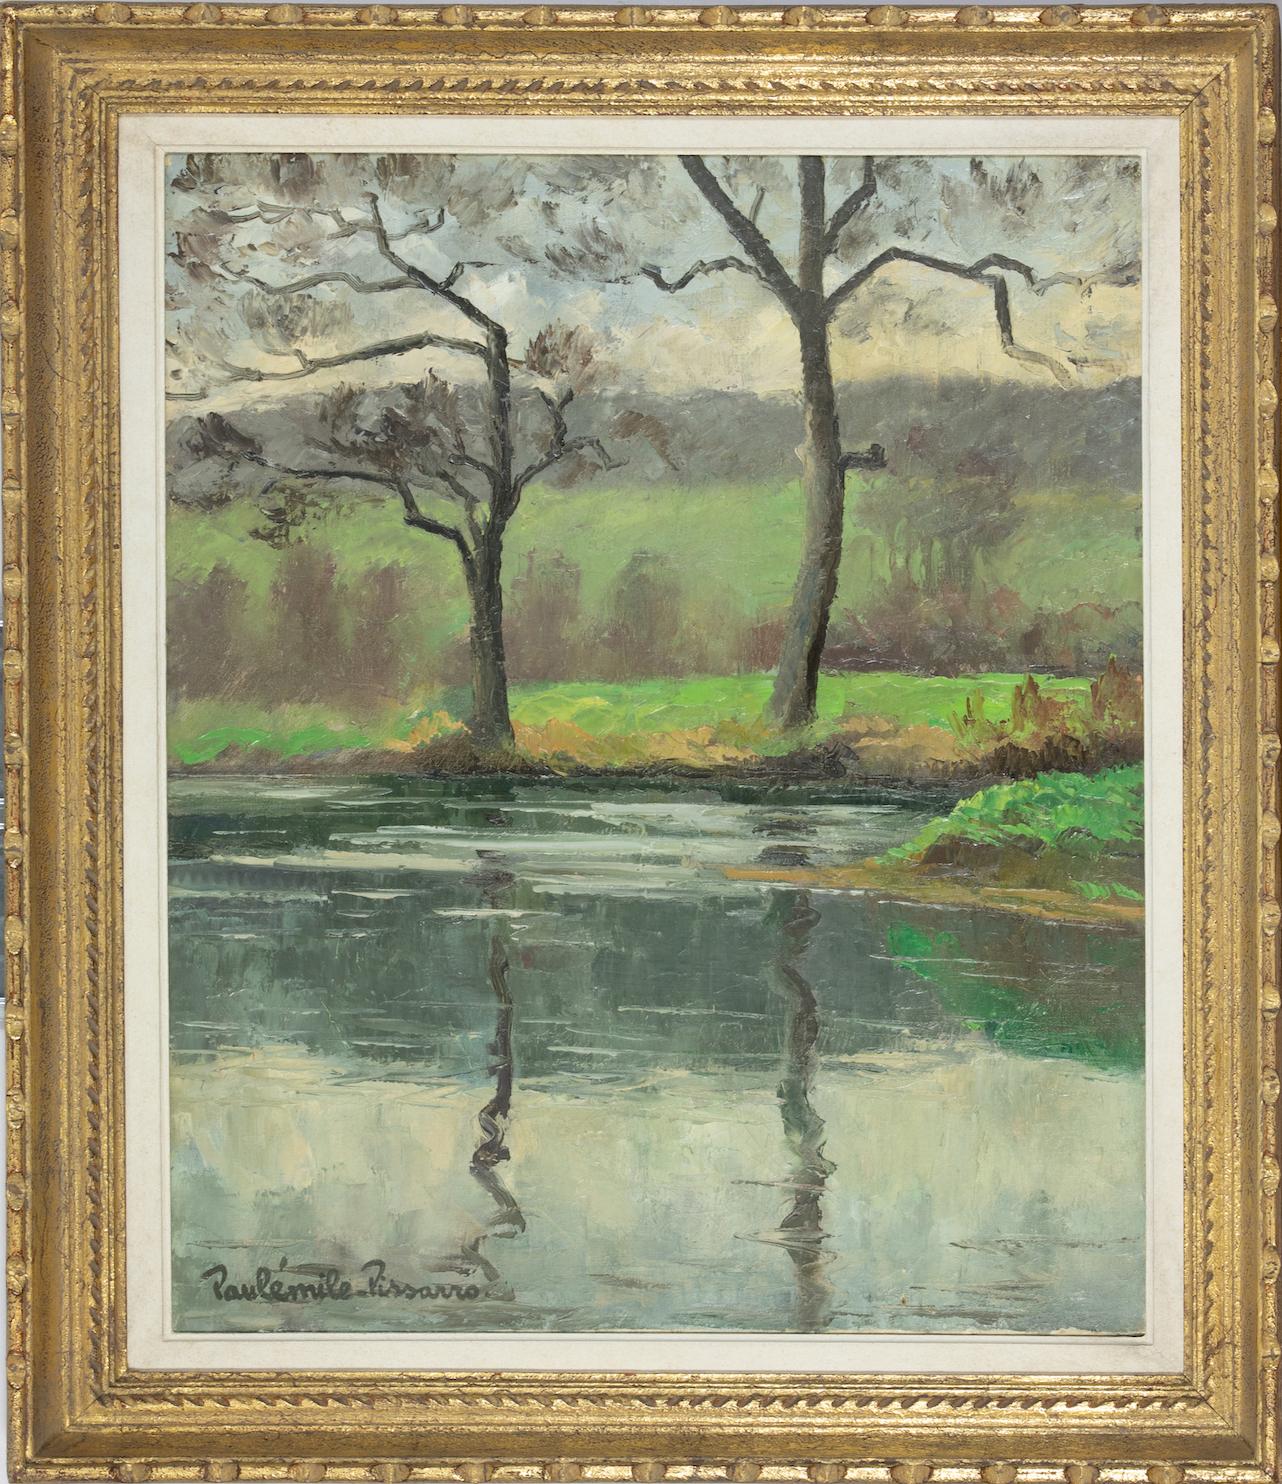 Landscape painting by Paulémile Pissarro - 'Les Deux Arbres...' - Painting by Paul Emile Pissarro